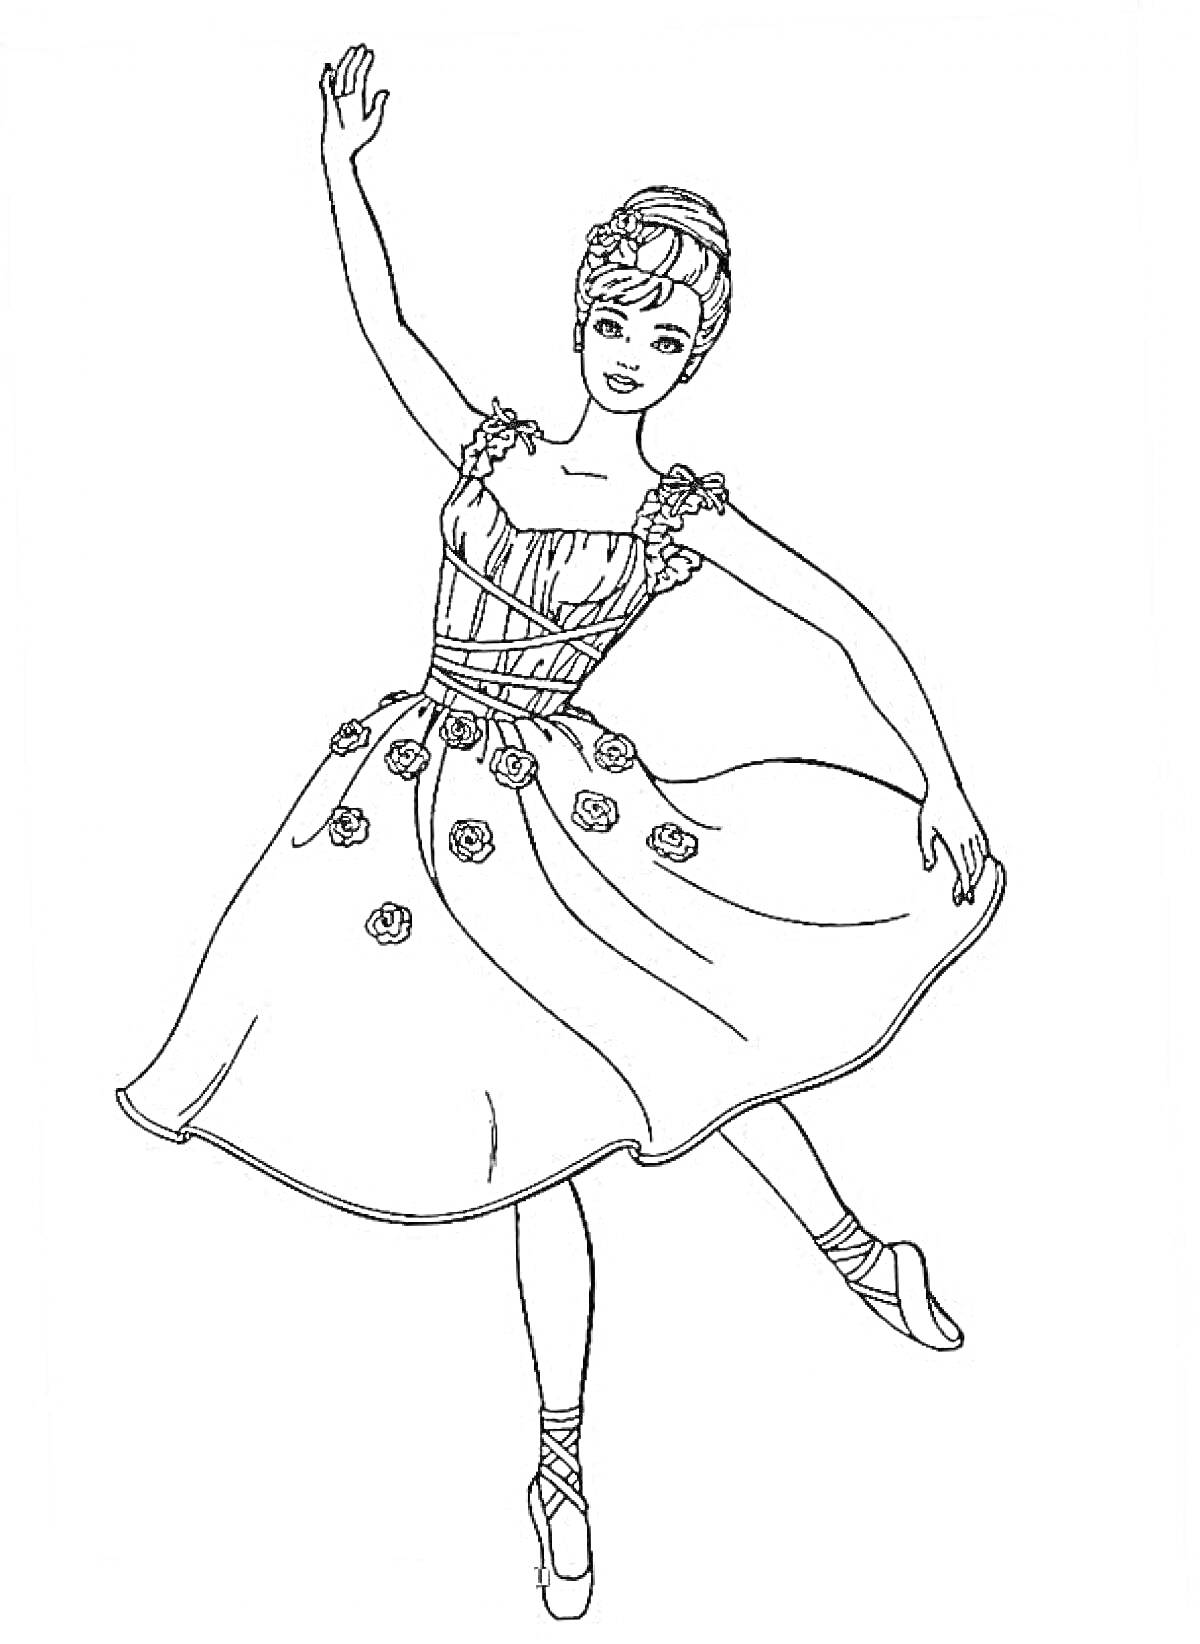 Раскраска Балерина в классической позе с поднятой рукой и платьем с цветами